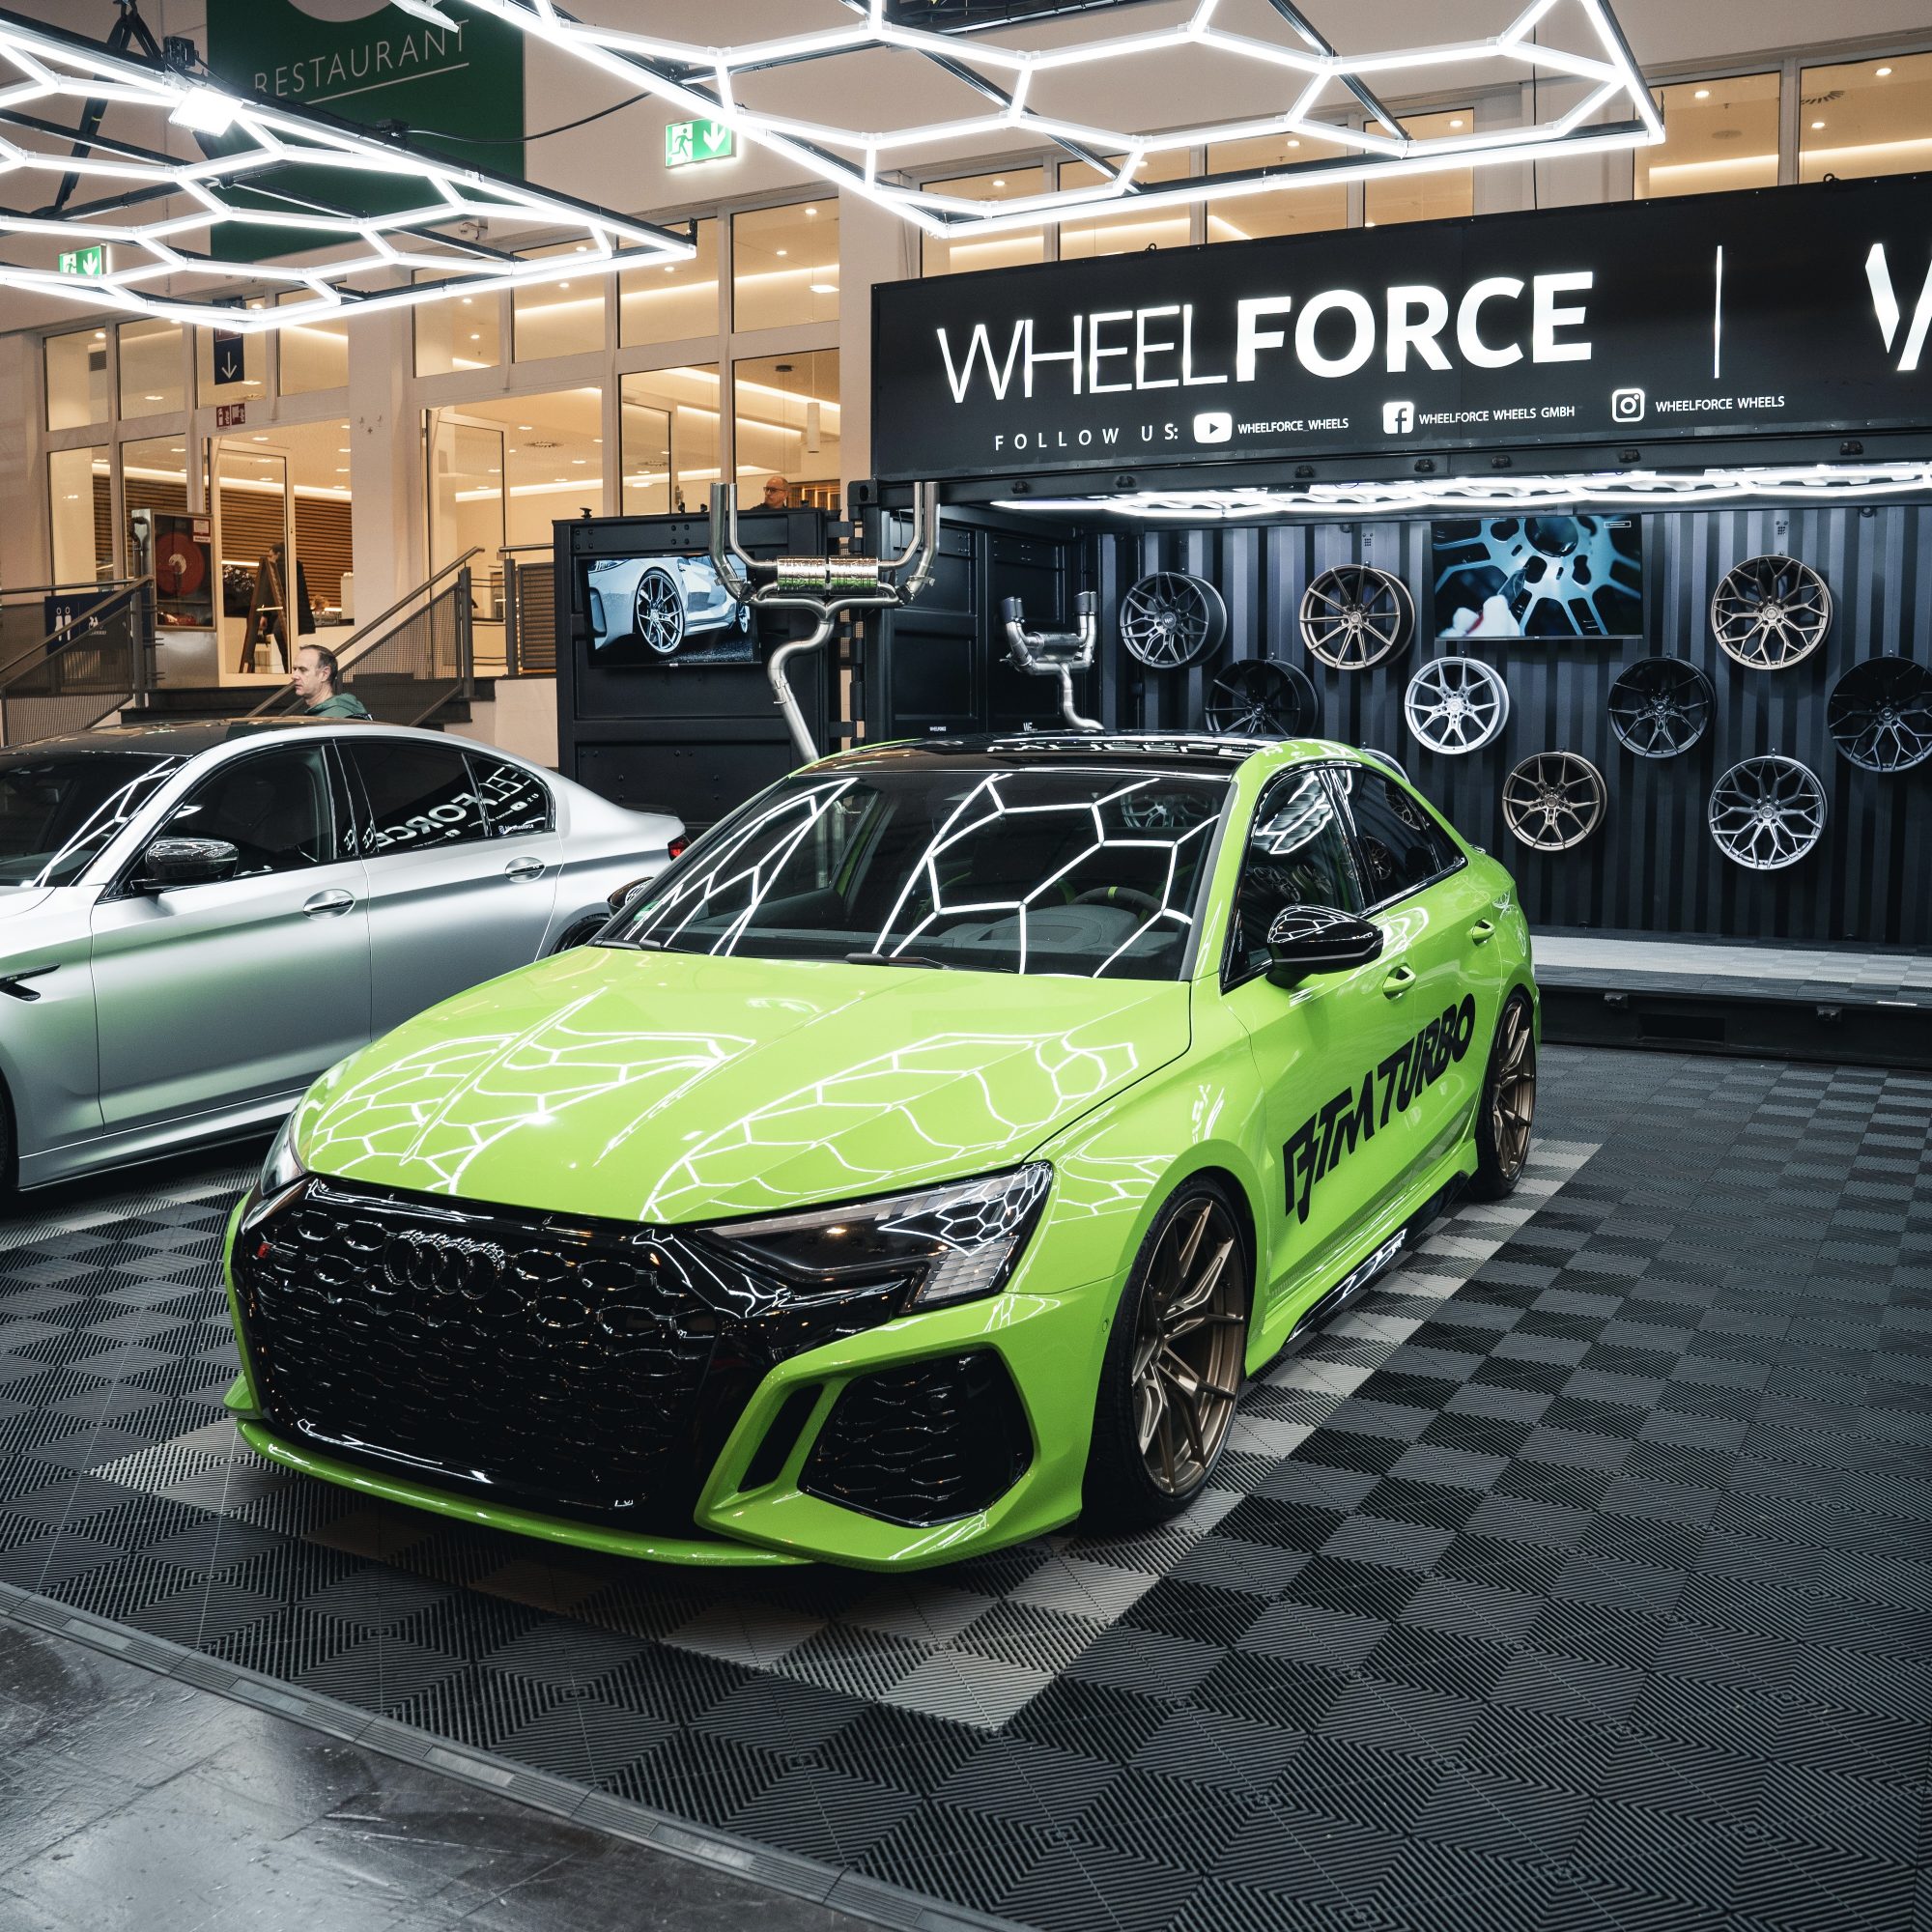 Wheelforce auf der Essen Motor Show 2022 – 3 neue Felgen-Designs, die richtig ballern!